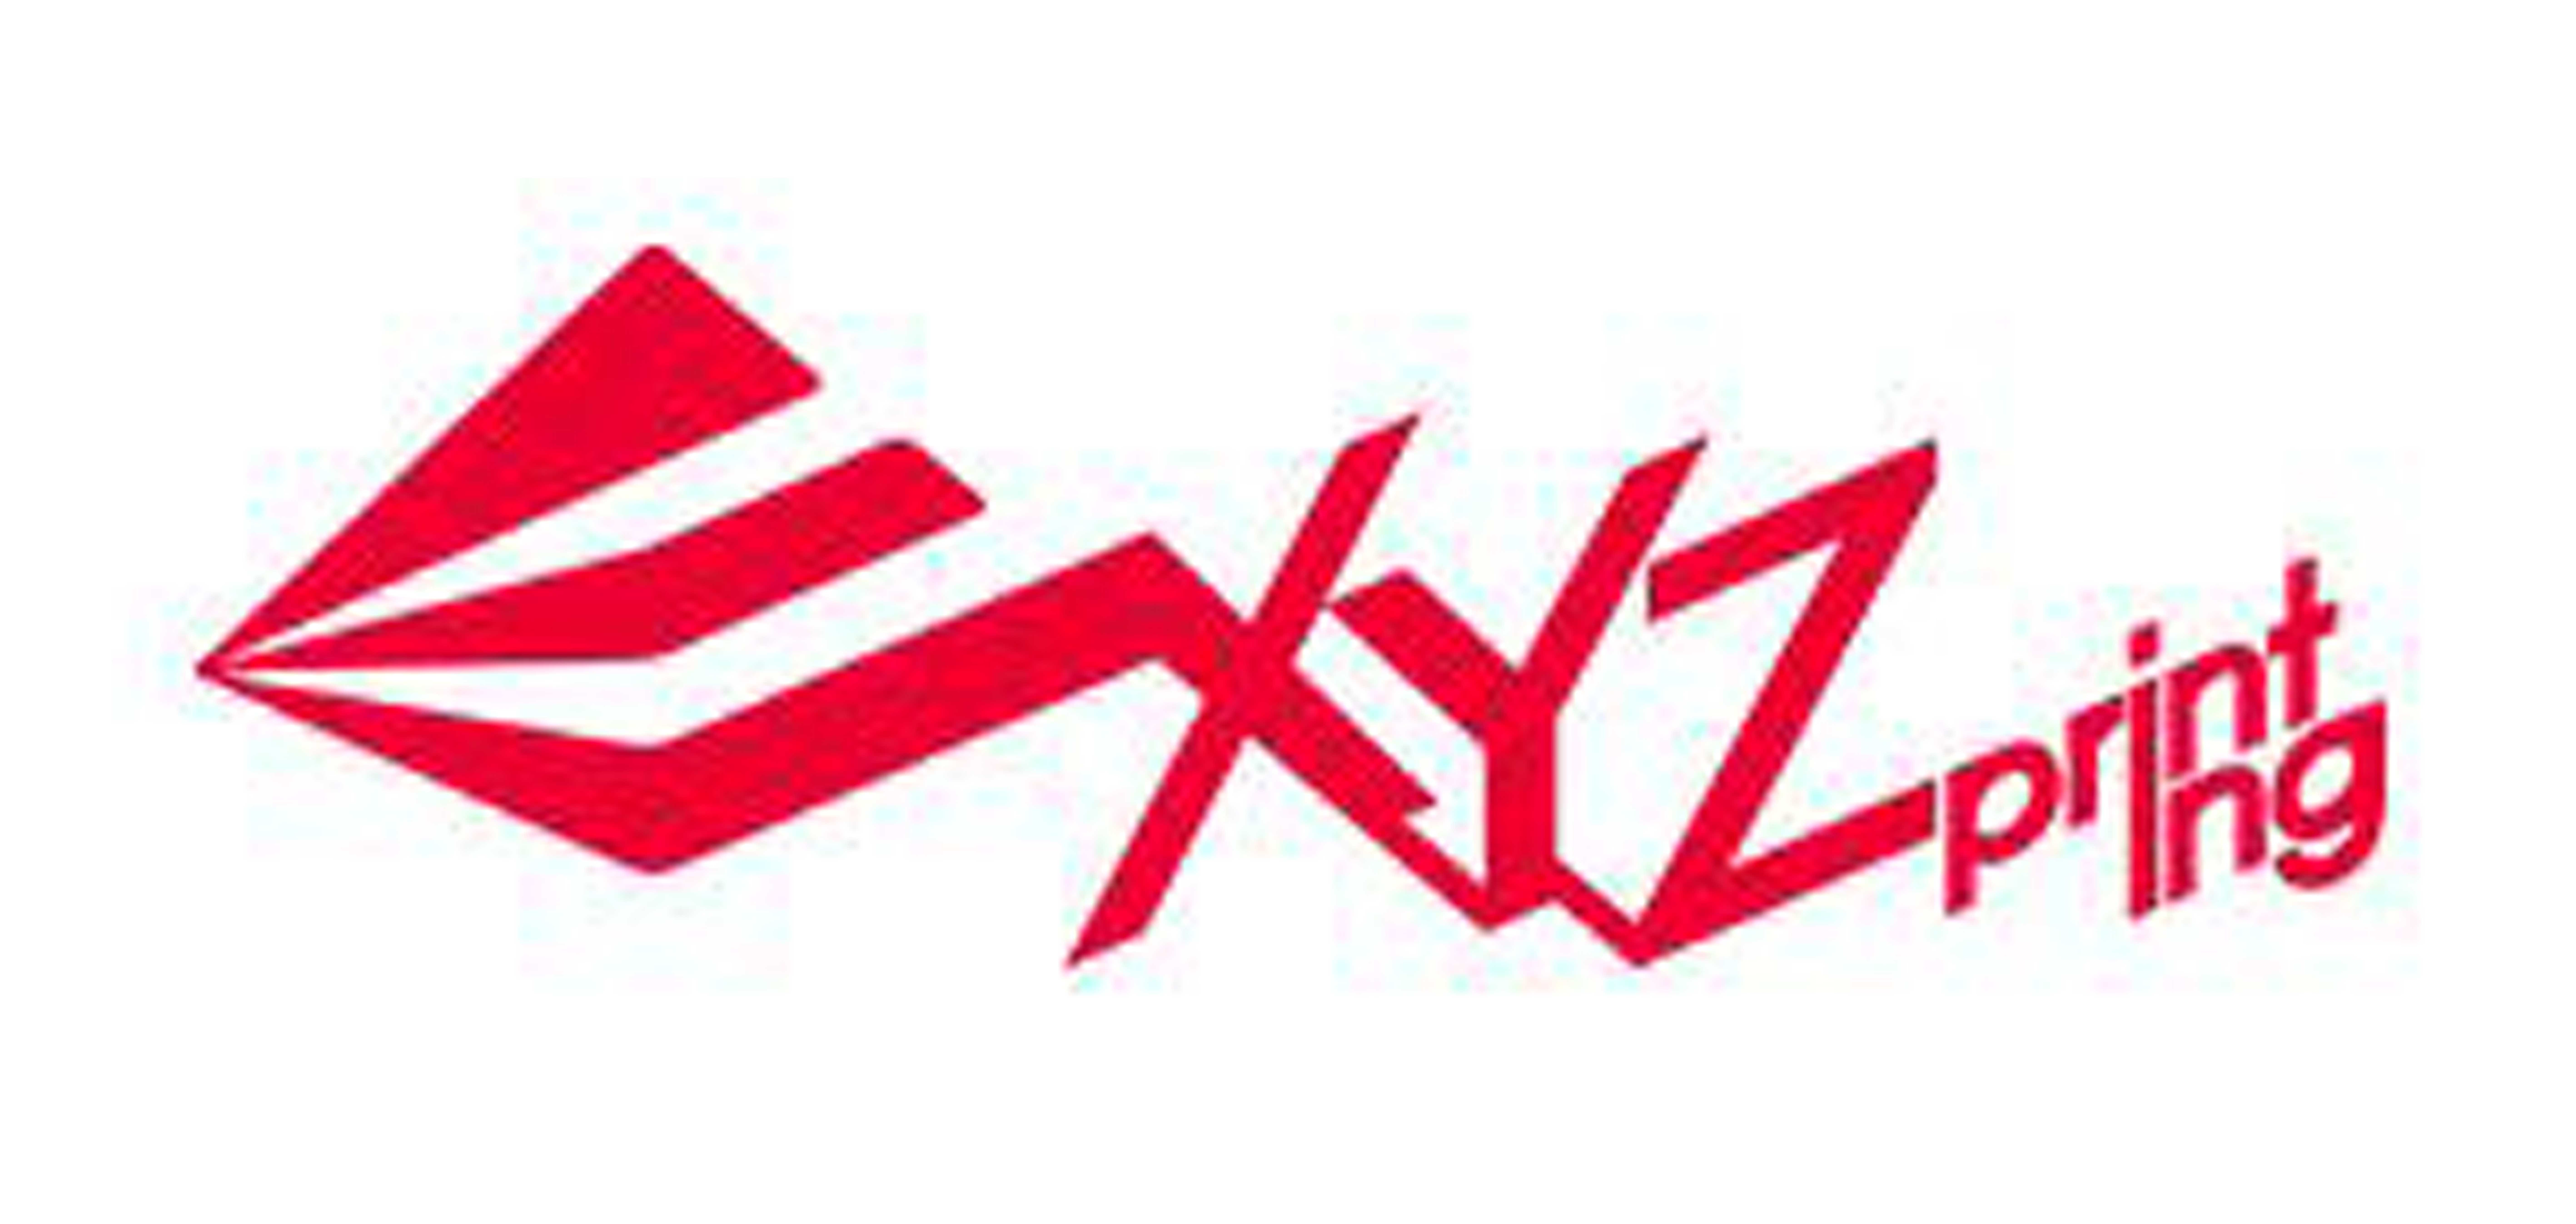 xyzprinting是什么牌子_xyzprinting品牌怎么样?